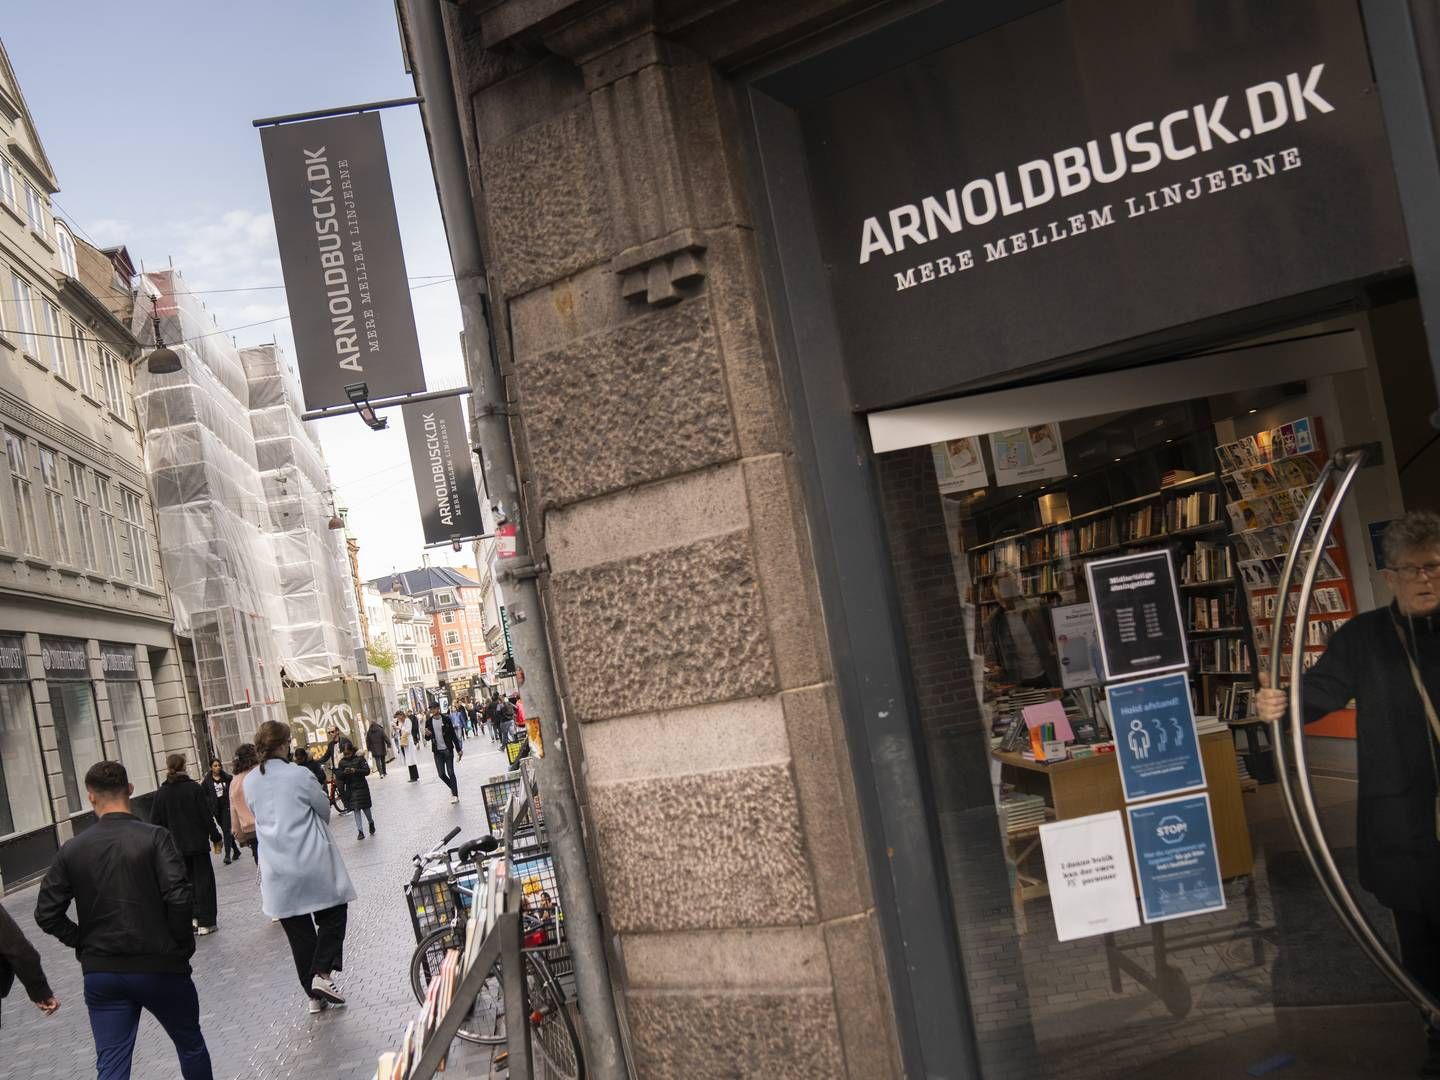 Boghandlerkæden Arnold Busck indgav konkursbegæring under coronakrisen. | Foto: Anthon Unger